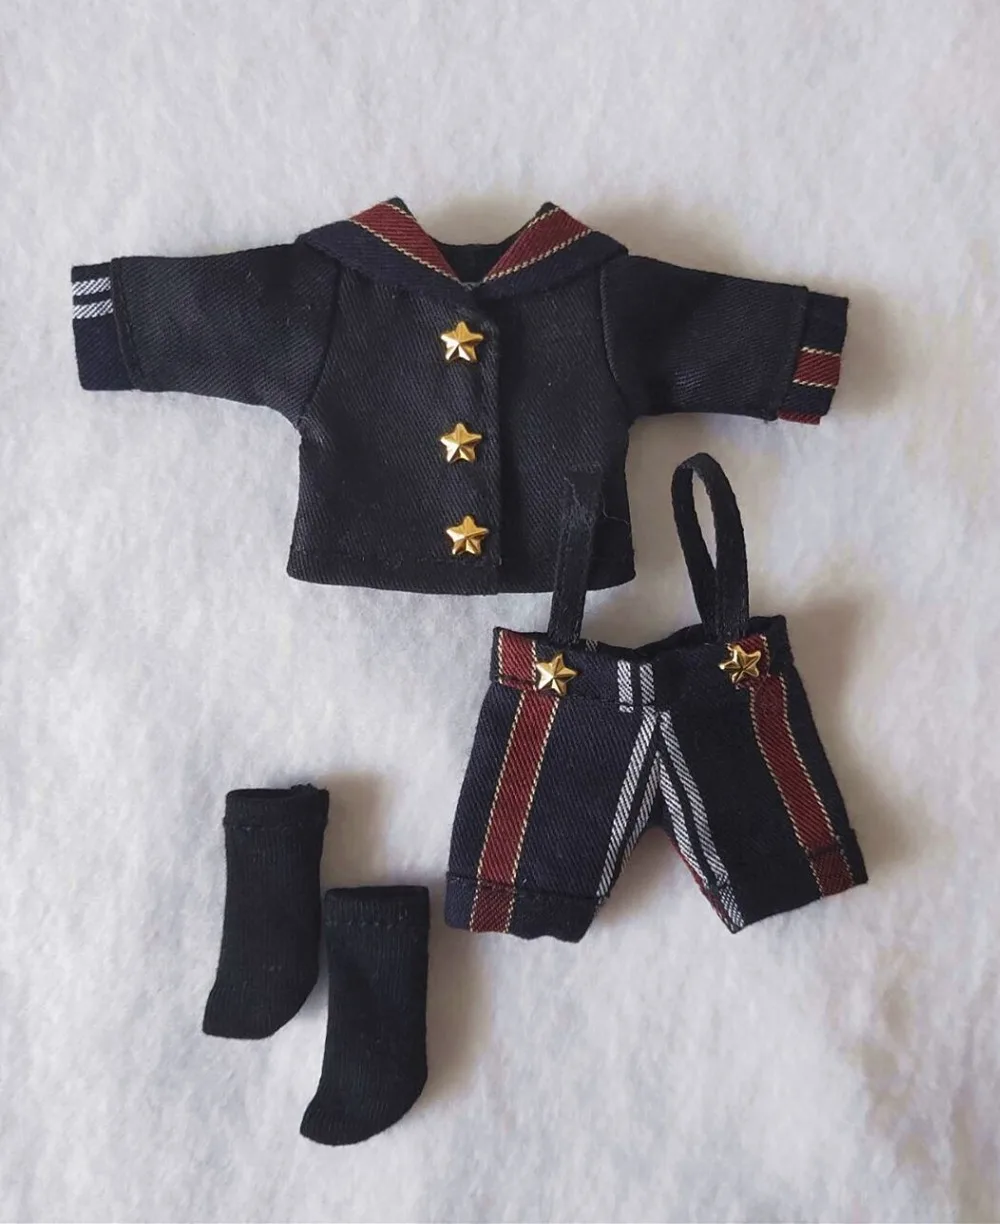 1 комплект Obitsu 11 кукольная одежда Студенческая форма костюм для OB11, 1/12 BJD Кукла Одежда Аксессуары